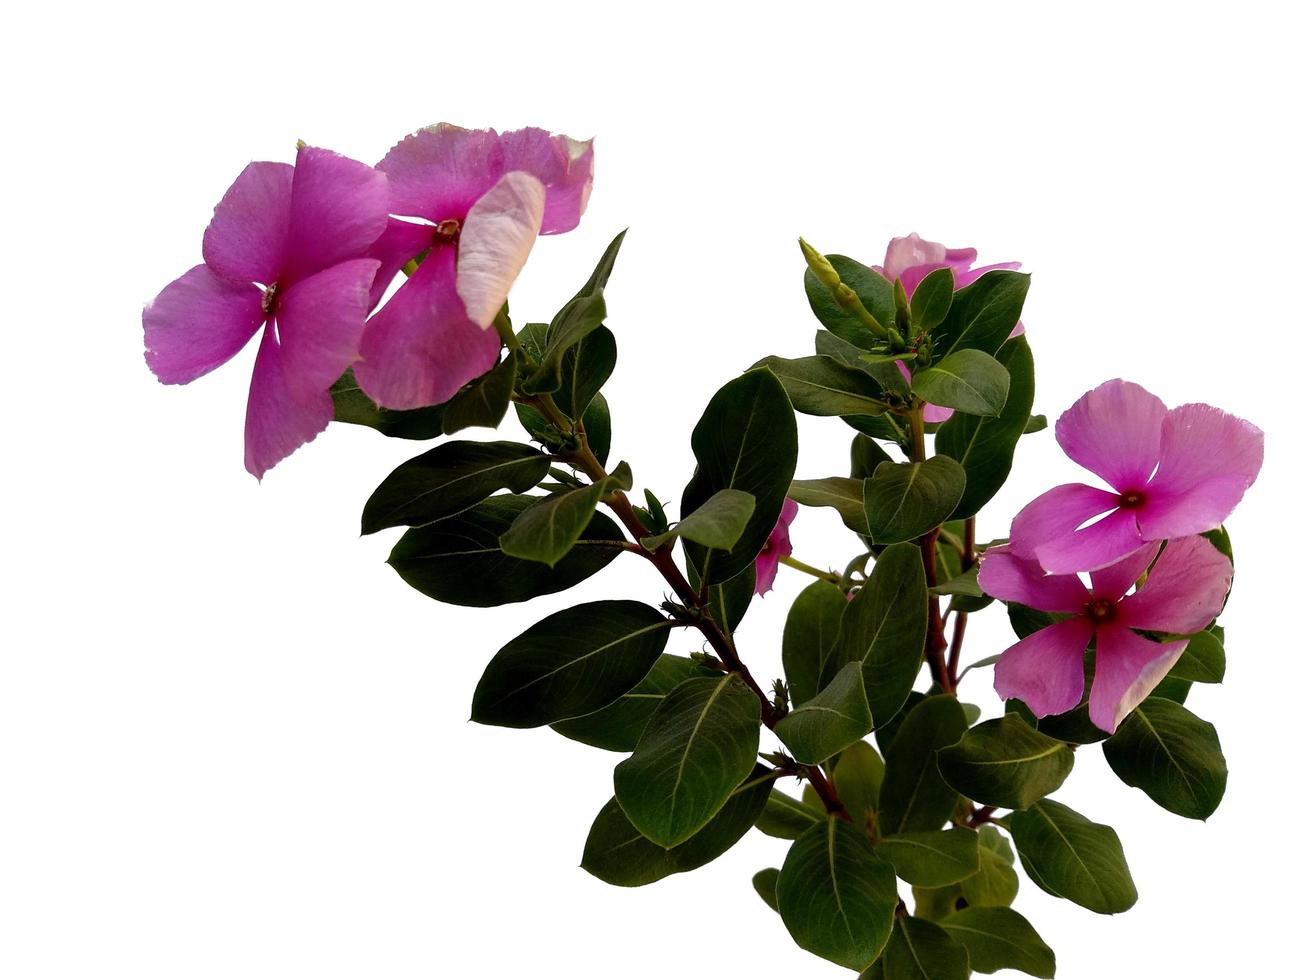 flor de vinca ou madagascar pervinca isolada no fundo branco foto